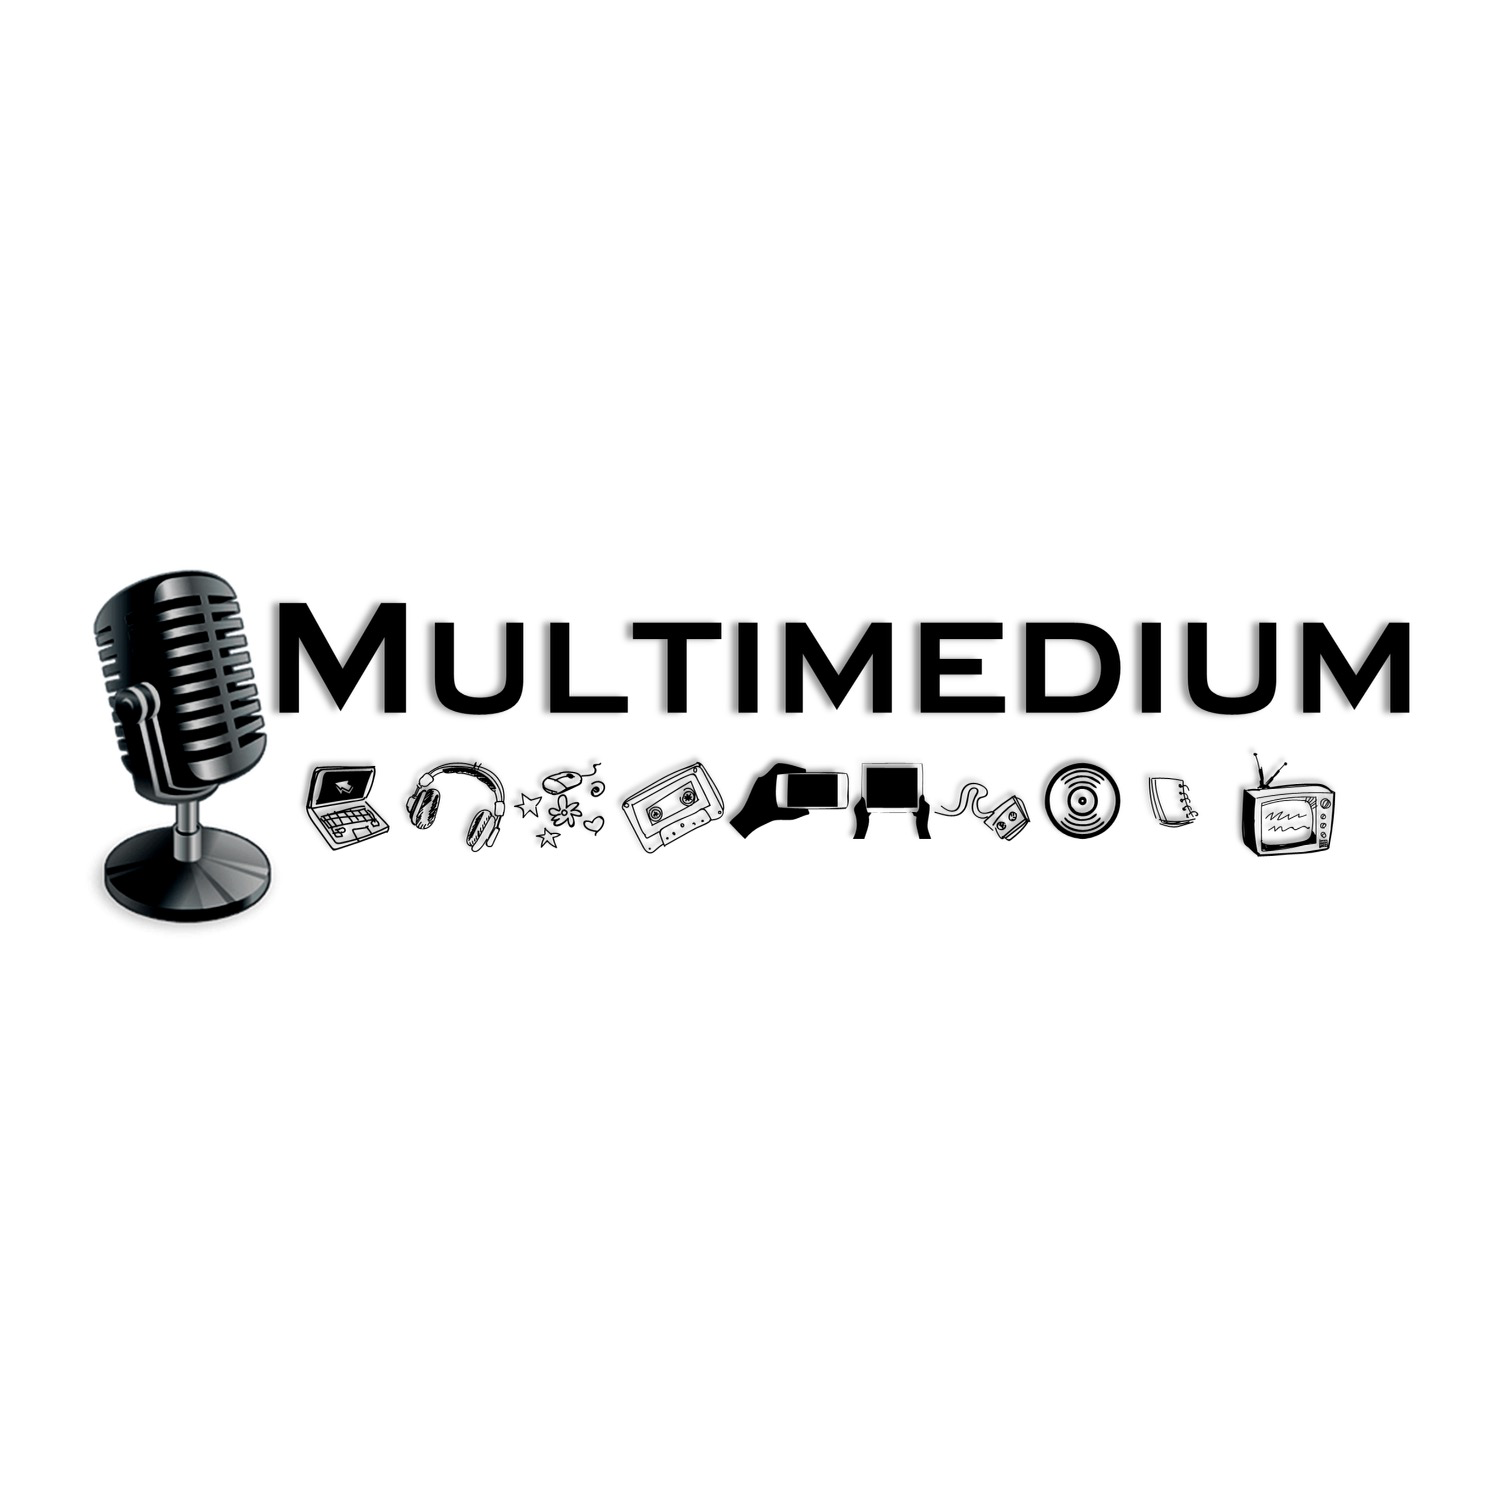 Multimedium